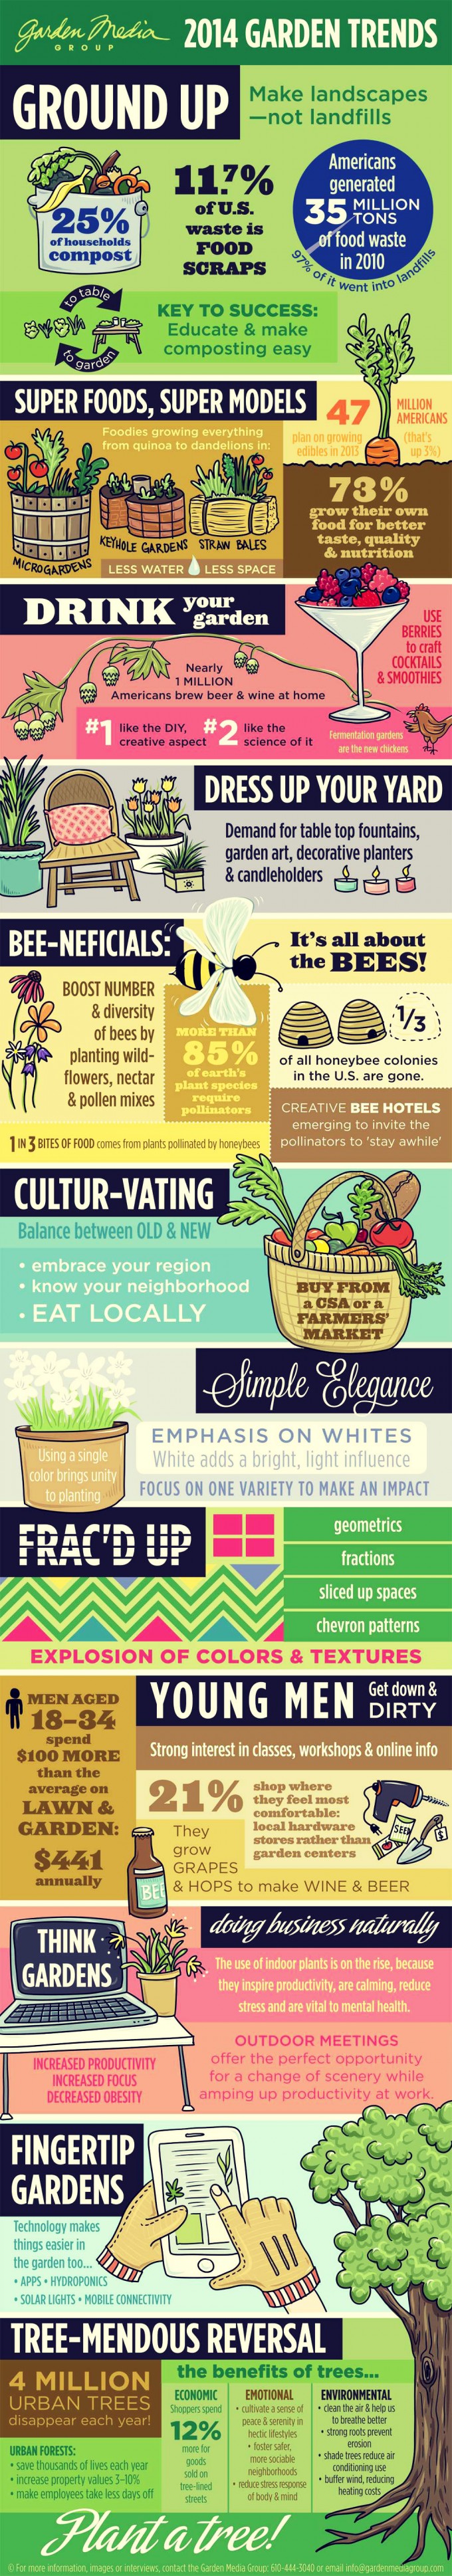 2014-Garden-Trends-Infographic